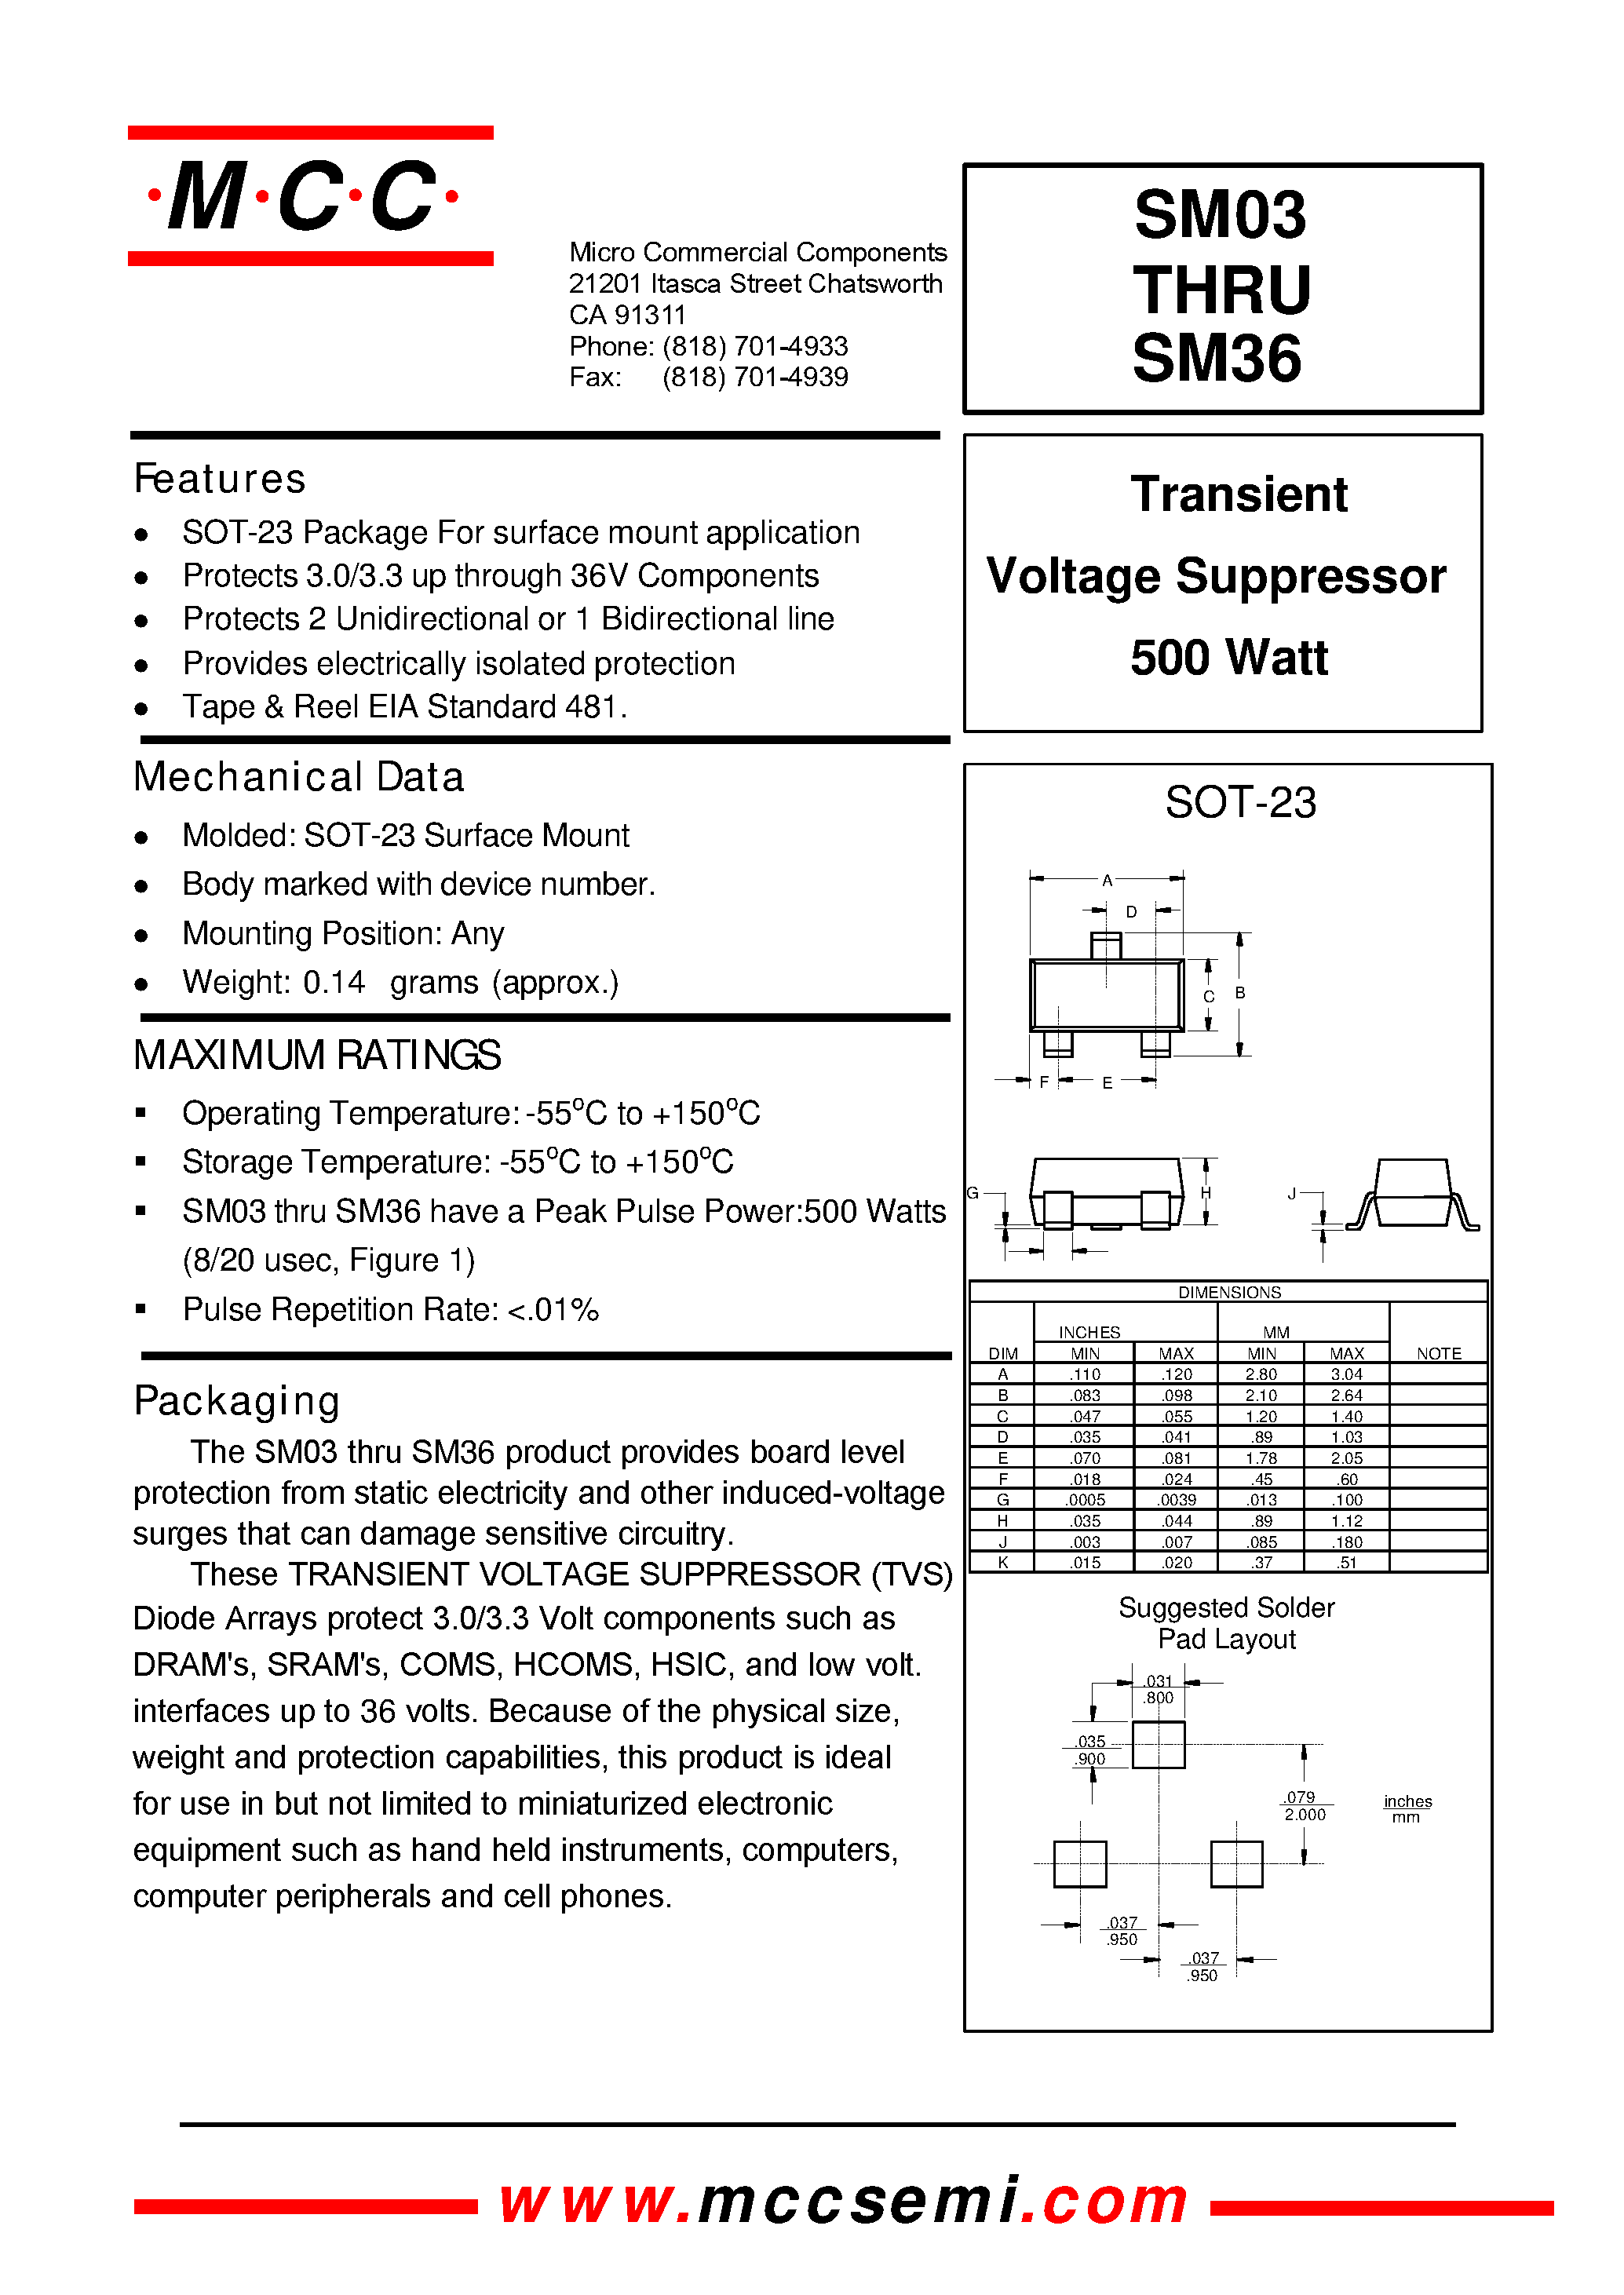 Datasheet SM12 - Transient Voltage Suppressor 500 Watt page 1